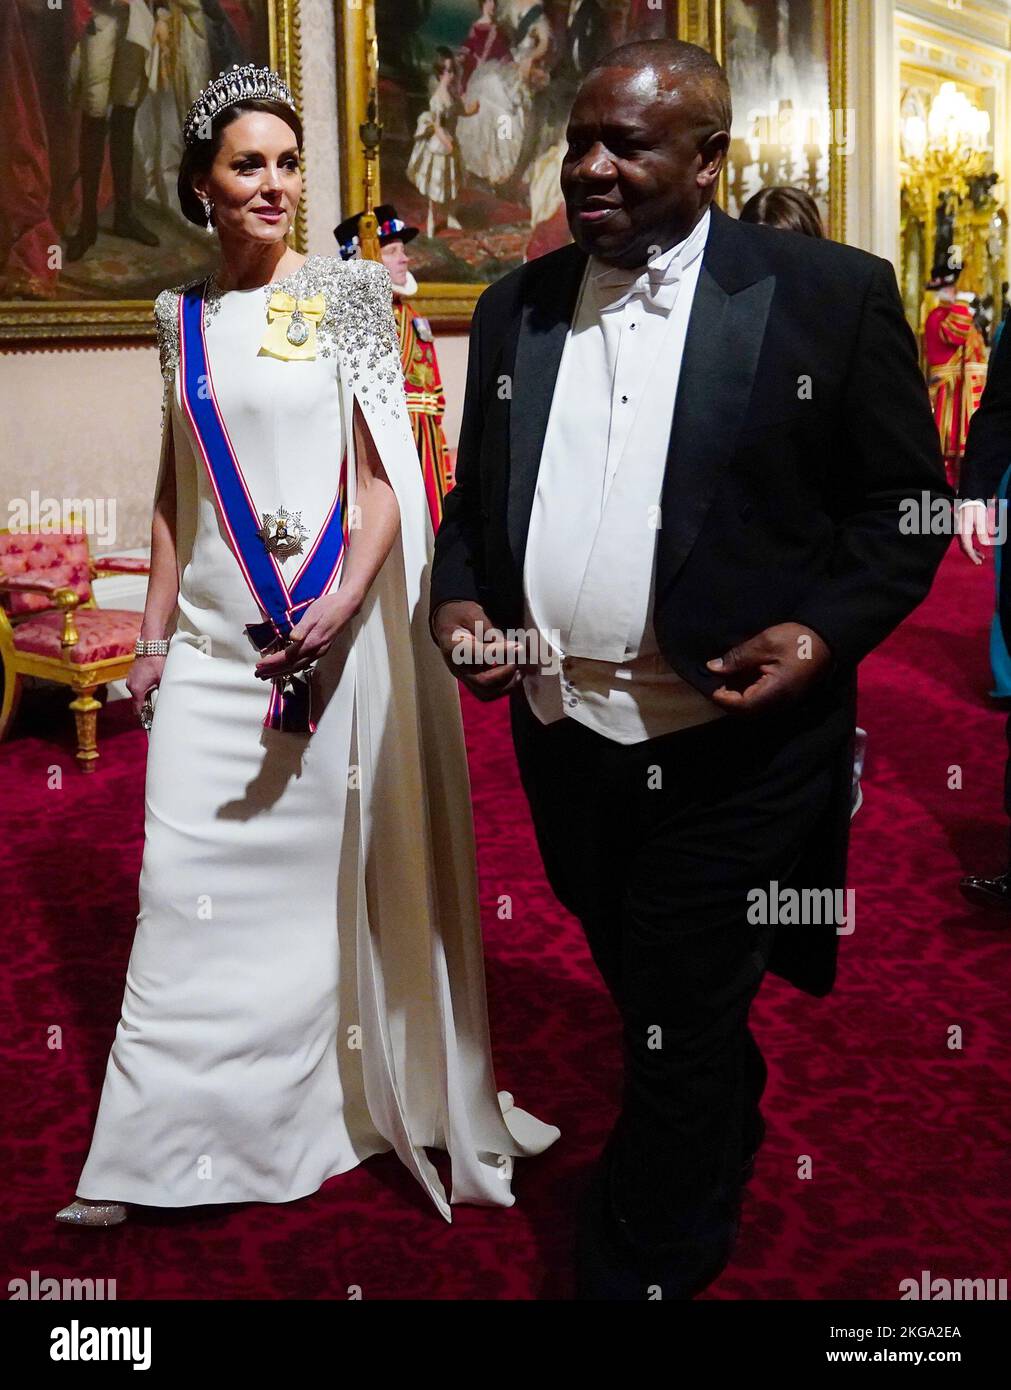 La Princesse de Galles avec des invités lors du banquet d'État au Palais de Buckingham, Londres, pour la visite d'État au Royaume-Uni par le Président Cyril Ramaphosa d'Afrique du Sud. Date de la photo: Mardi 22 novembre 2022. Banque D'Images